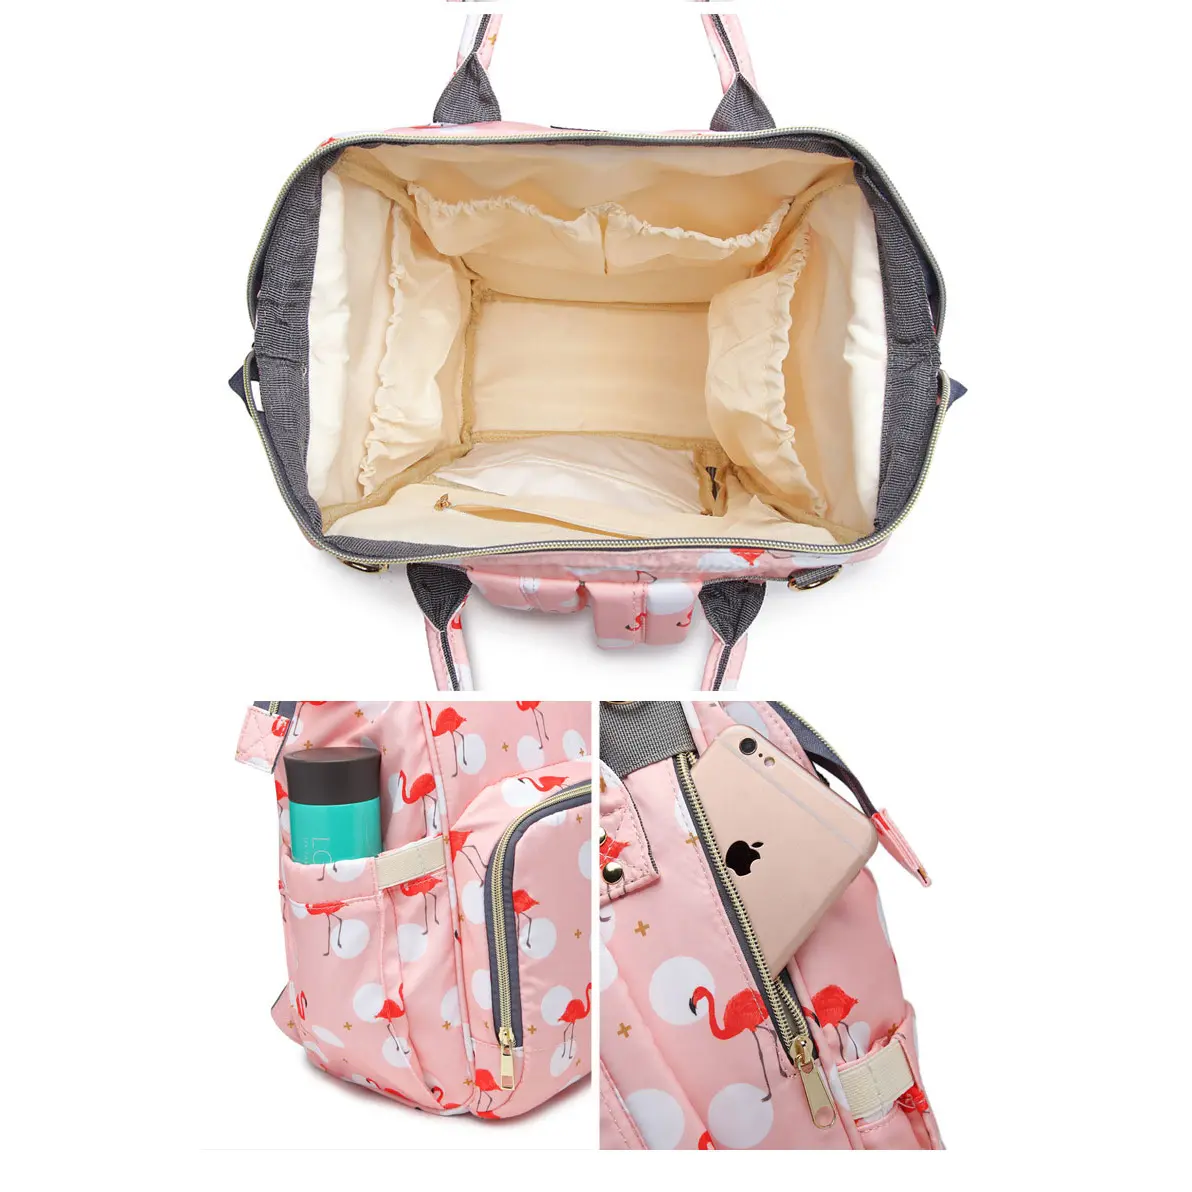 Pelenkázó hátizsák, hátitáska rózsaszín színben mintával (ST-MB-602-PINK) pelenkázótáska